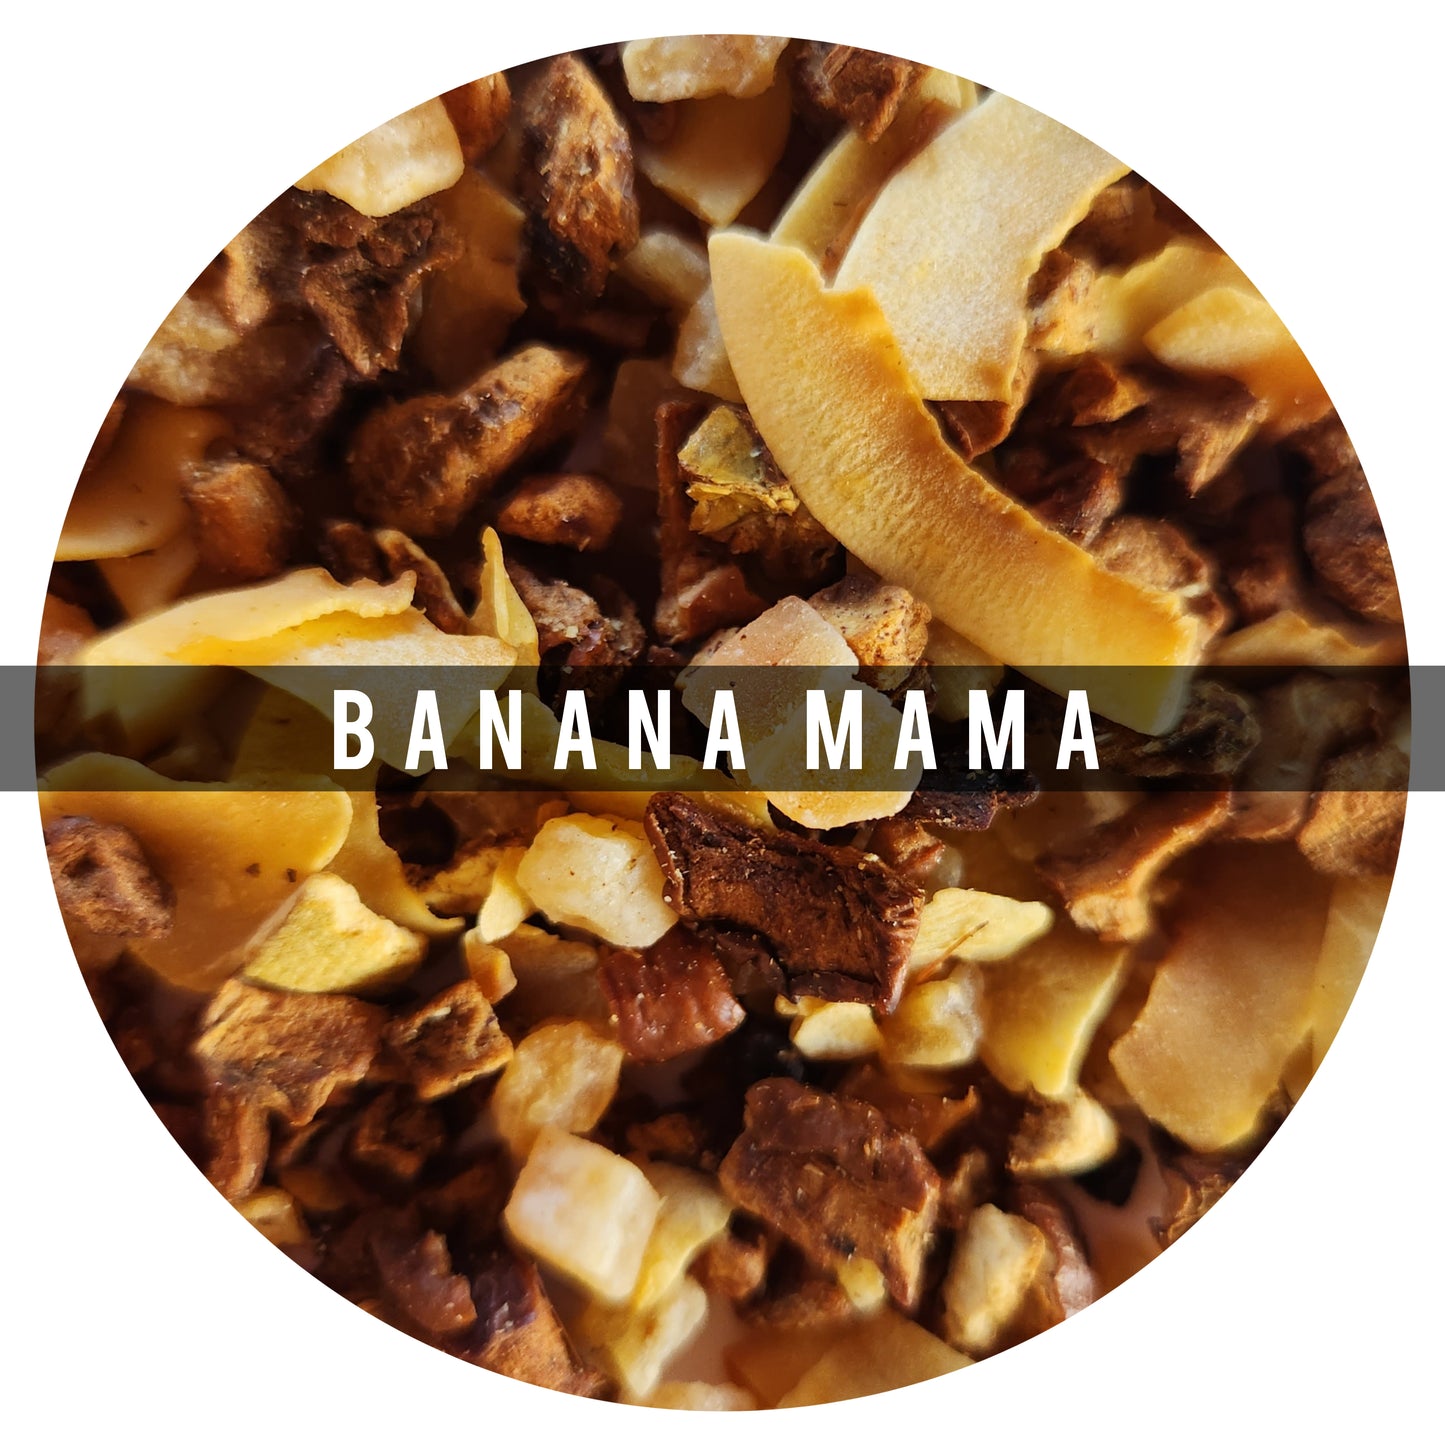 Banana mama 100g:Es una obra maestra, el coco, banano, roobois se combinan para crear esta deliciosa y cremosa tisana. Numerosos estudios han demostrado que el roobois es una fuente alta de zinc
Ingredientes: Coco, Roobois, Manzana, Papaya, Mango, Banano